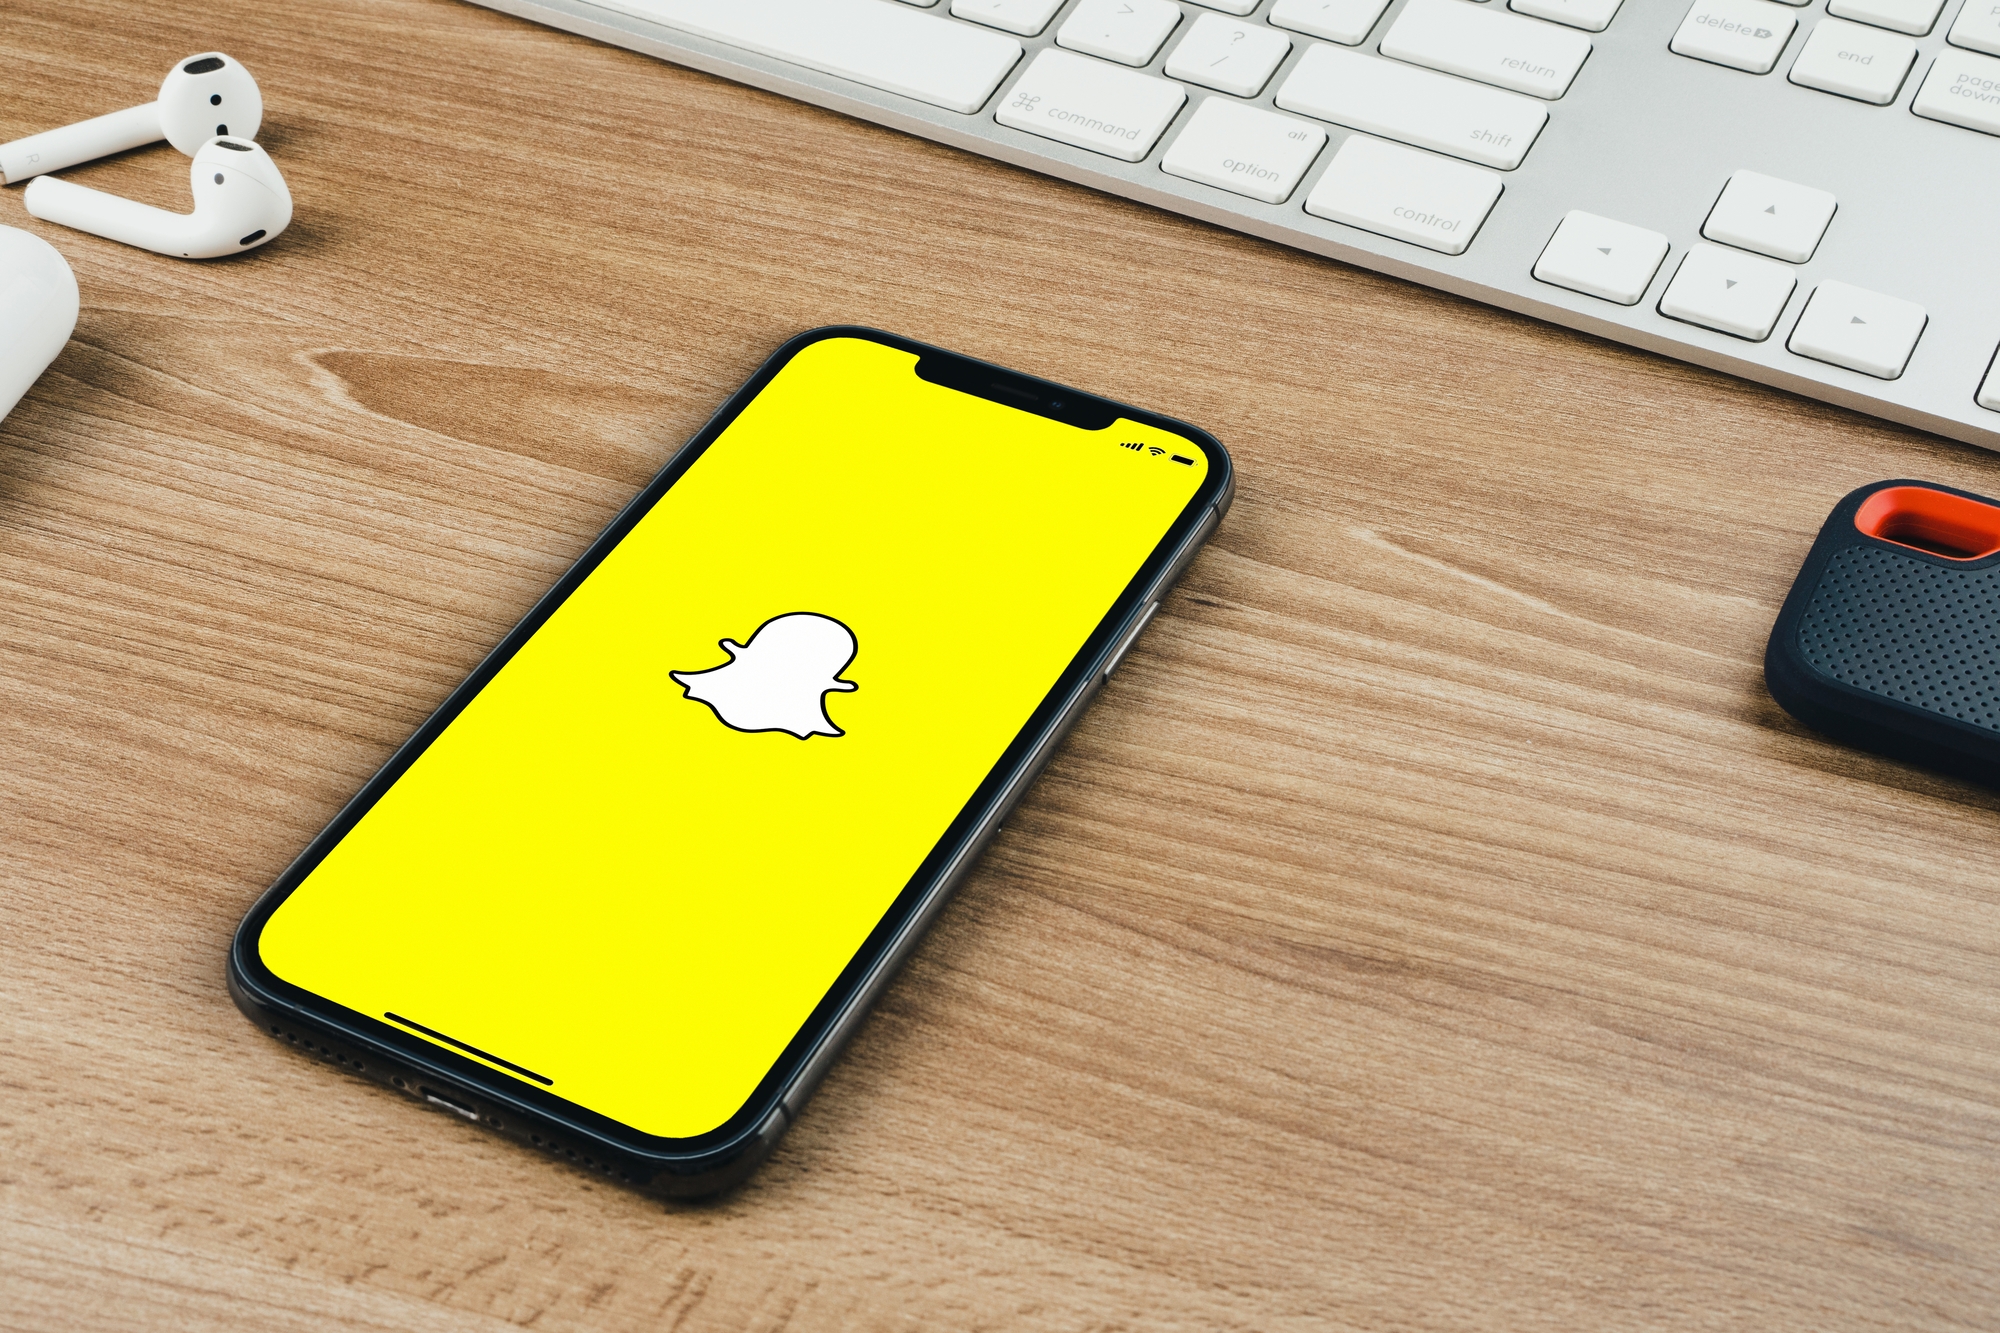 Facebook a espionné les utilisateurs de Snapchat via son VPN maison